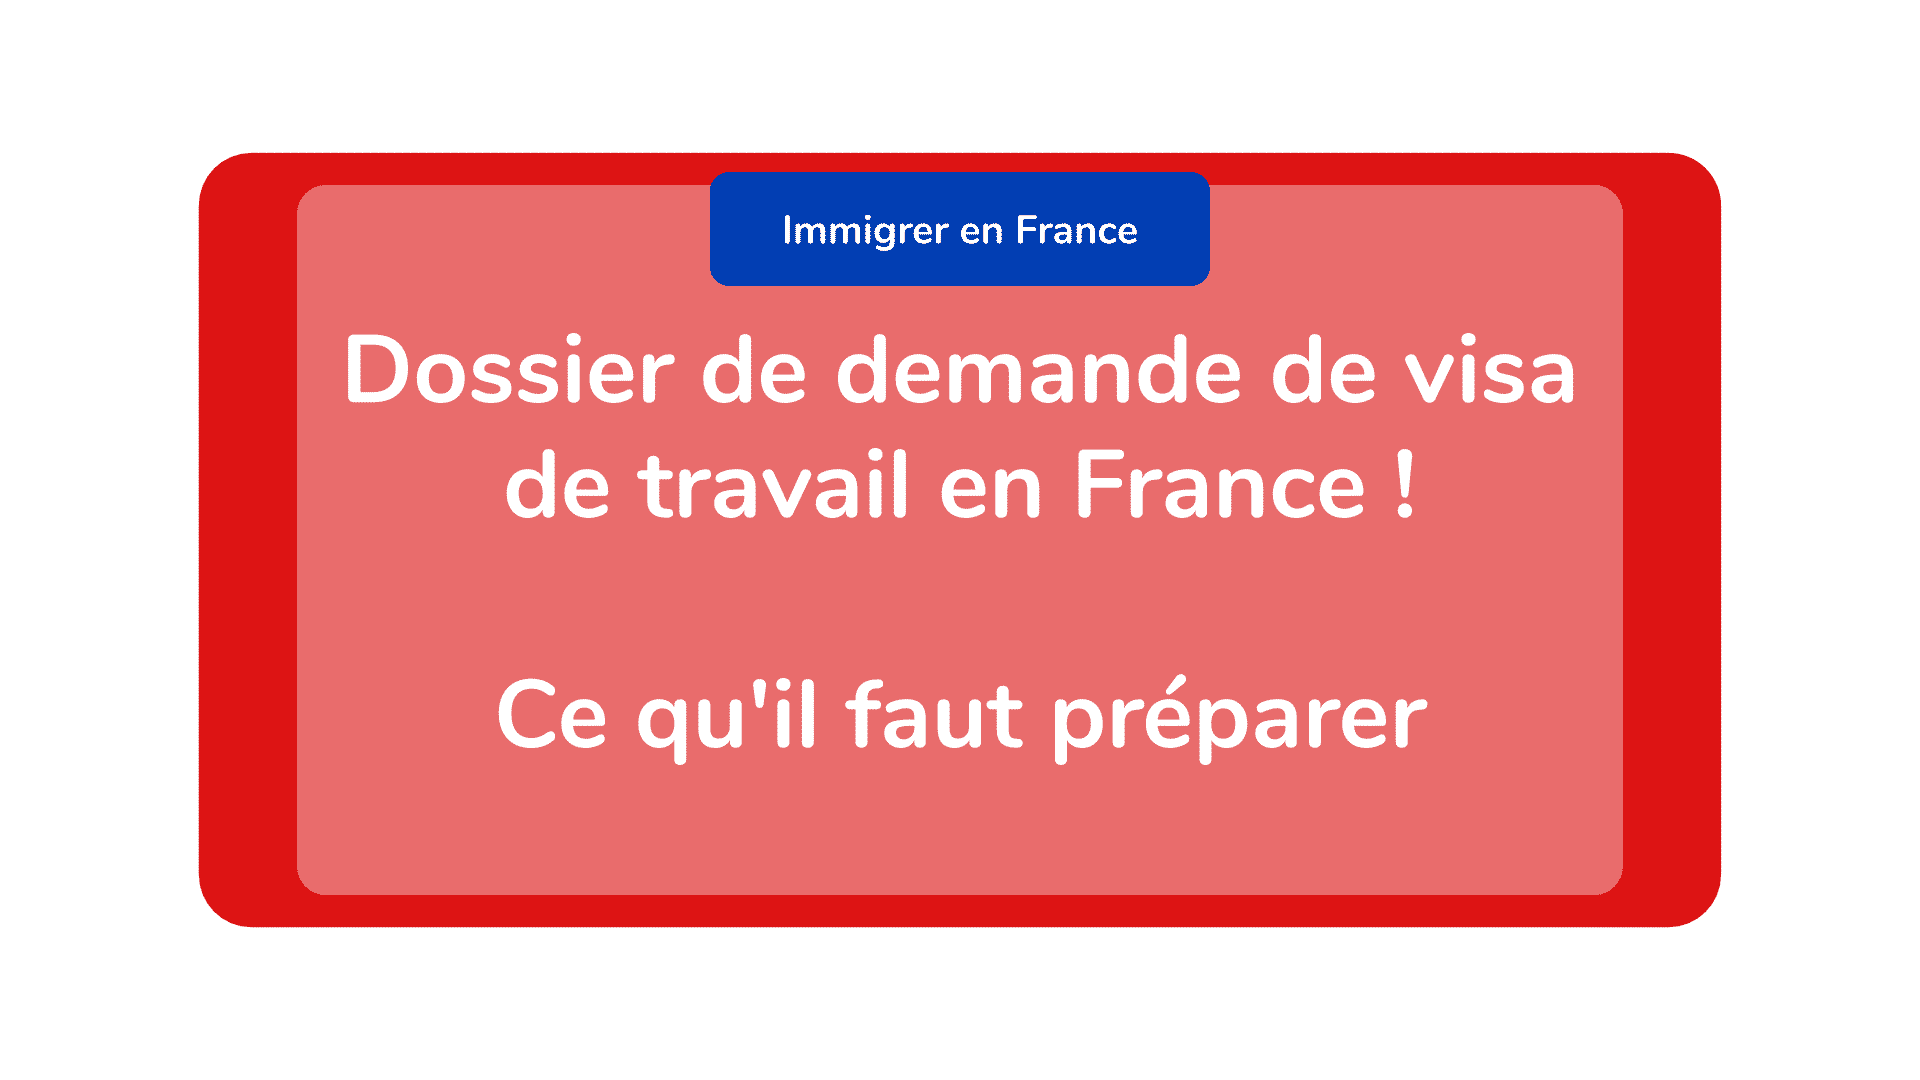 Dossier de demande de visa de travail en France ! Ce qu'il faut préparer